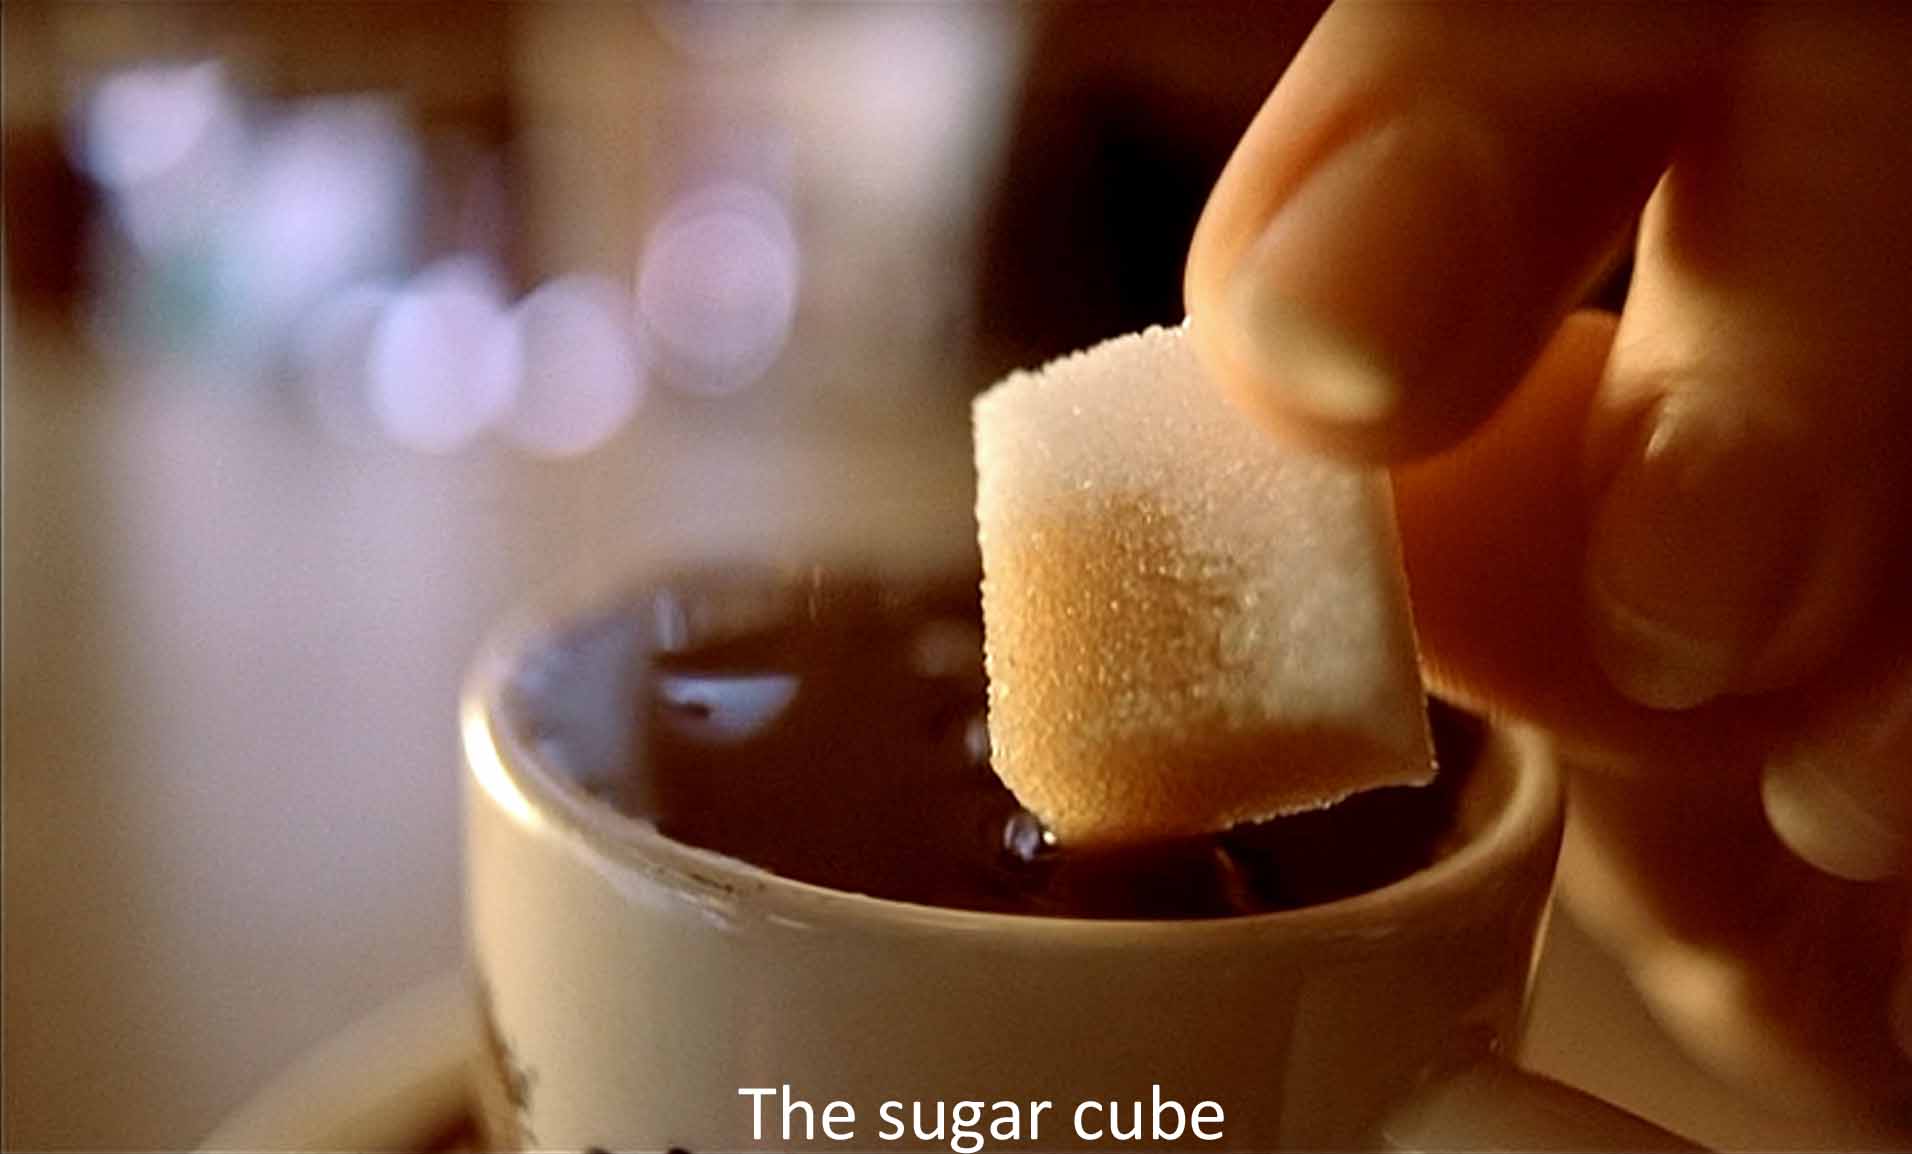 The sugar cube